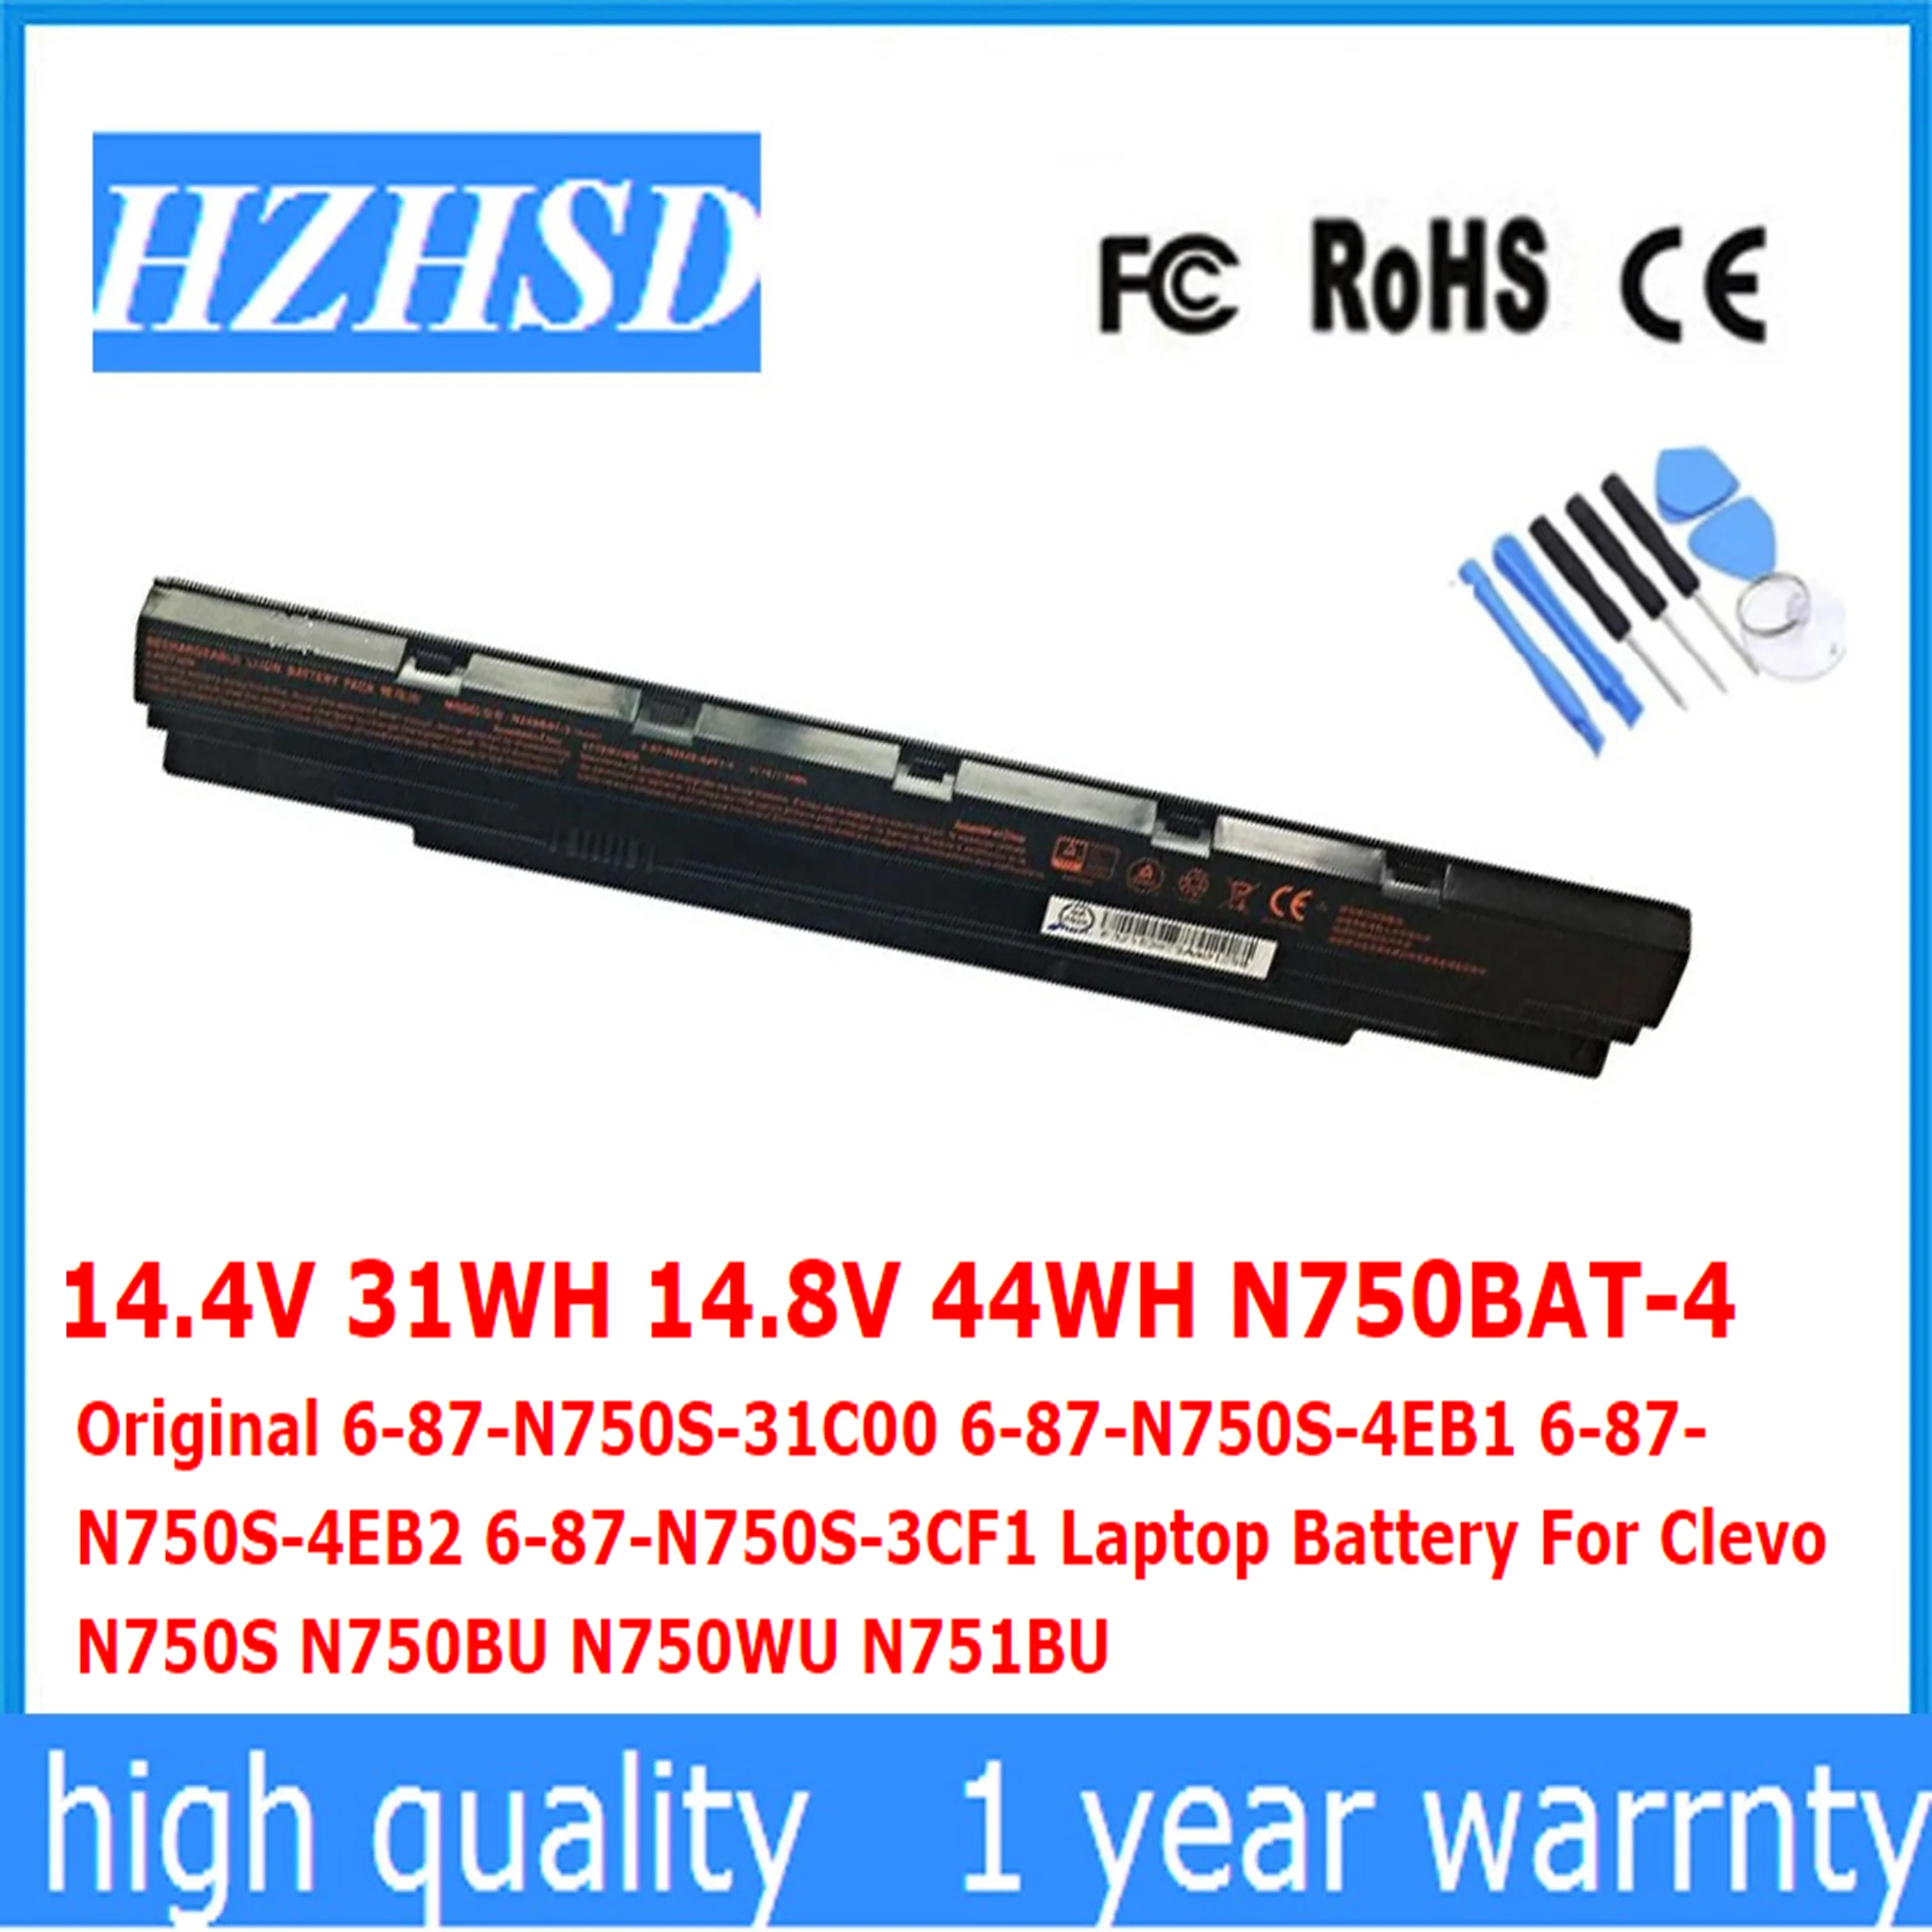 

14.4V 31WH 14.8V 44WH N750BAT-4 Original 6-87-N750S-31C00 N750S-4EB2 N750S-3CF1 Laptop Battery For Clevo N750BU N750WU N751BU